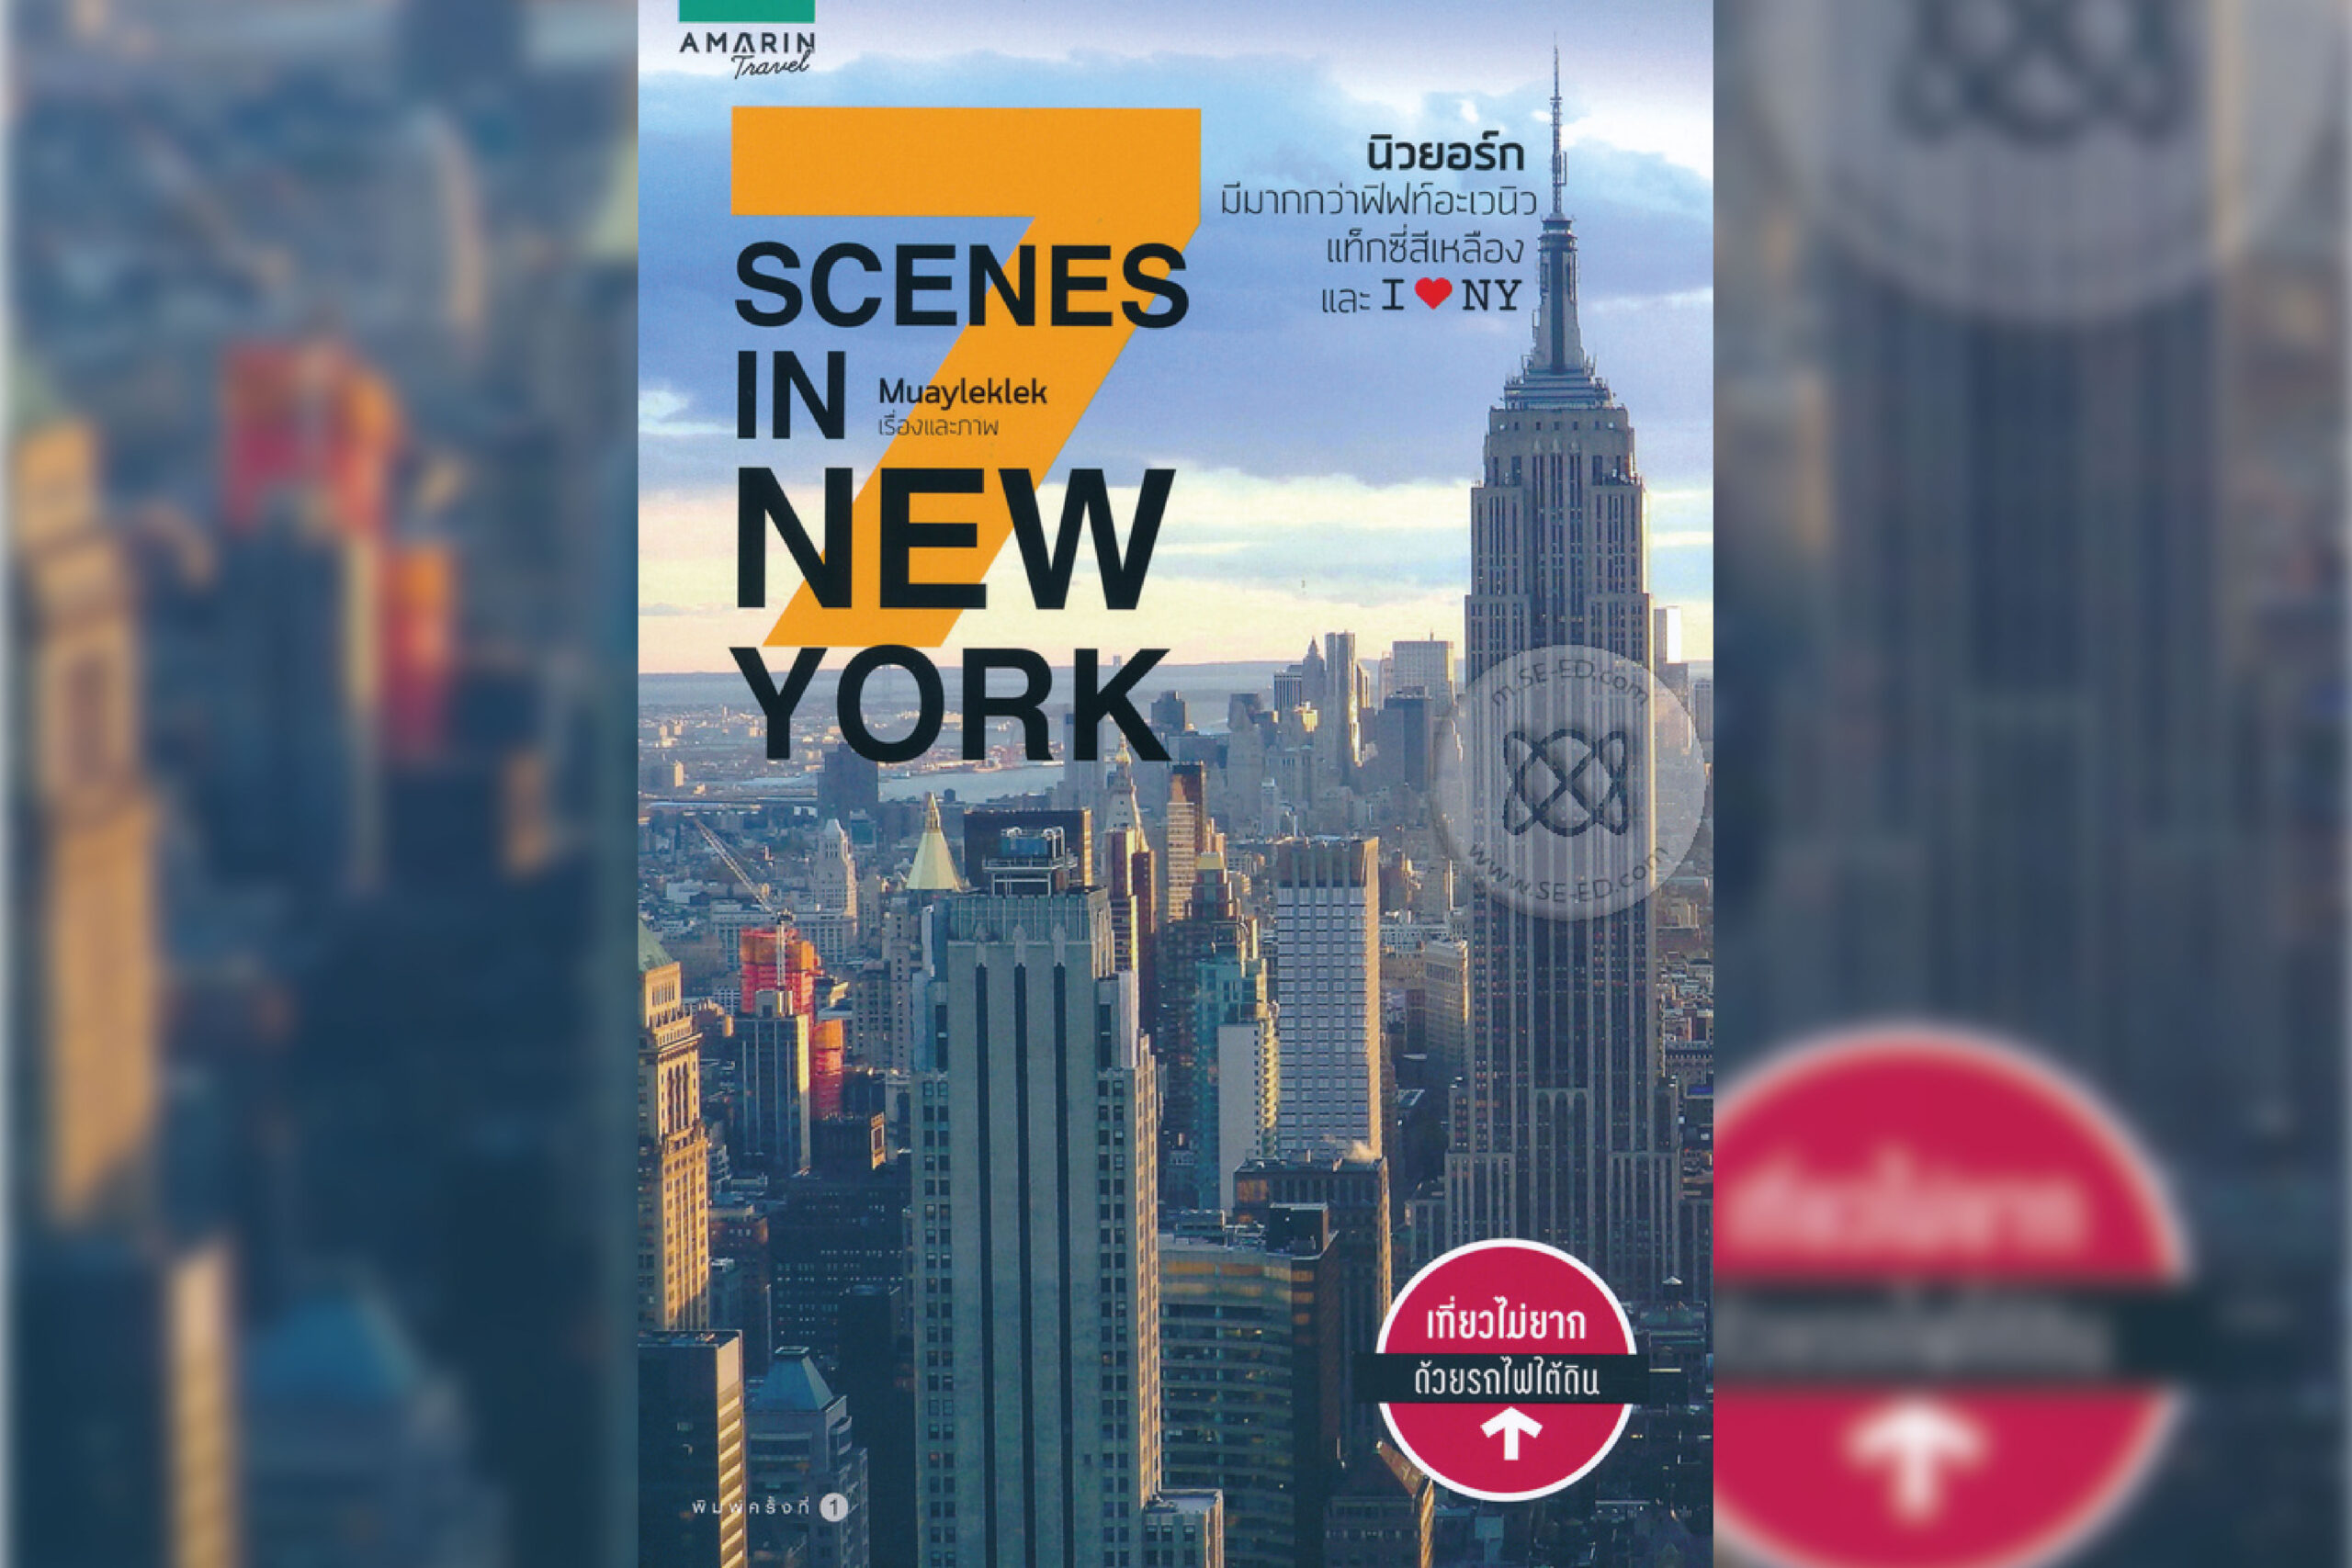 6. 7 Scenes in New York